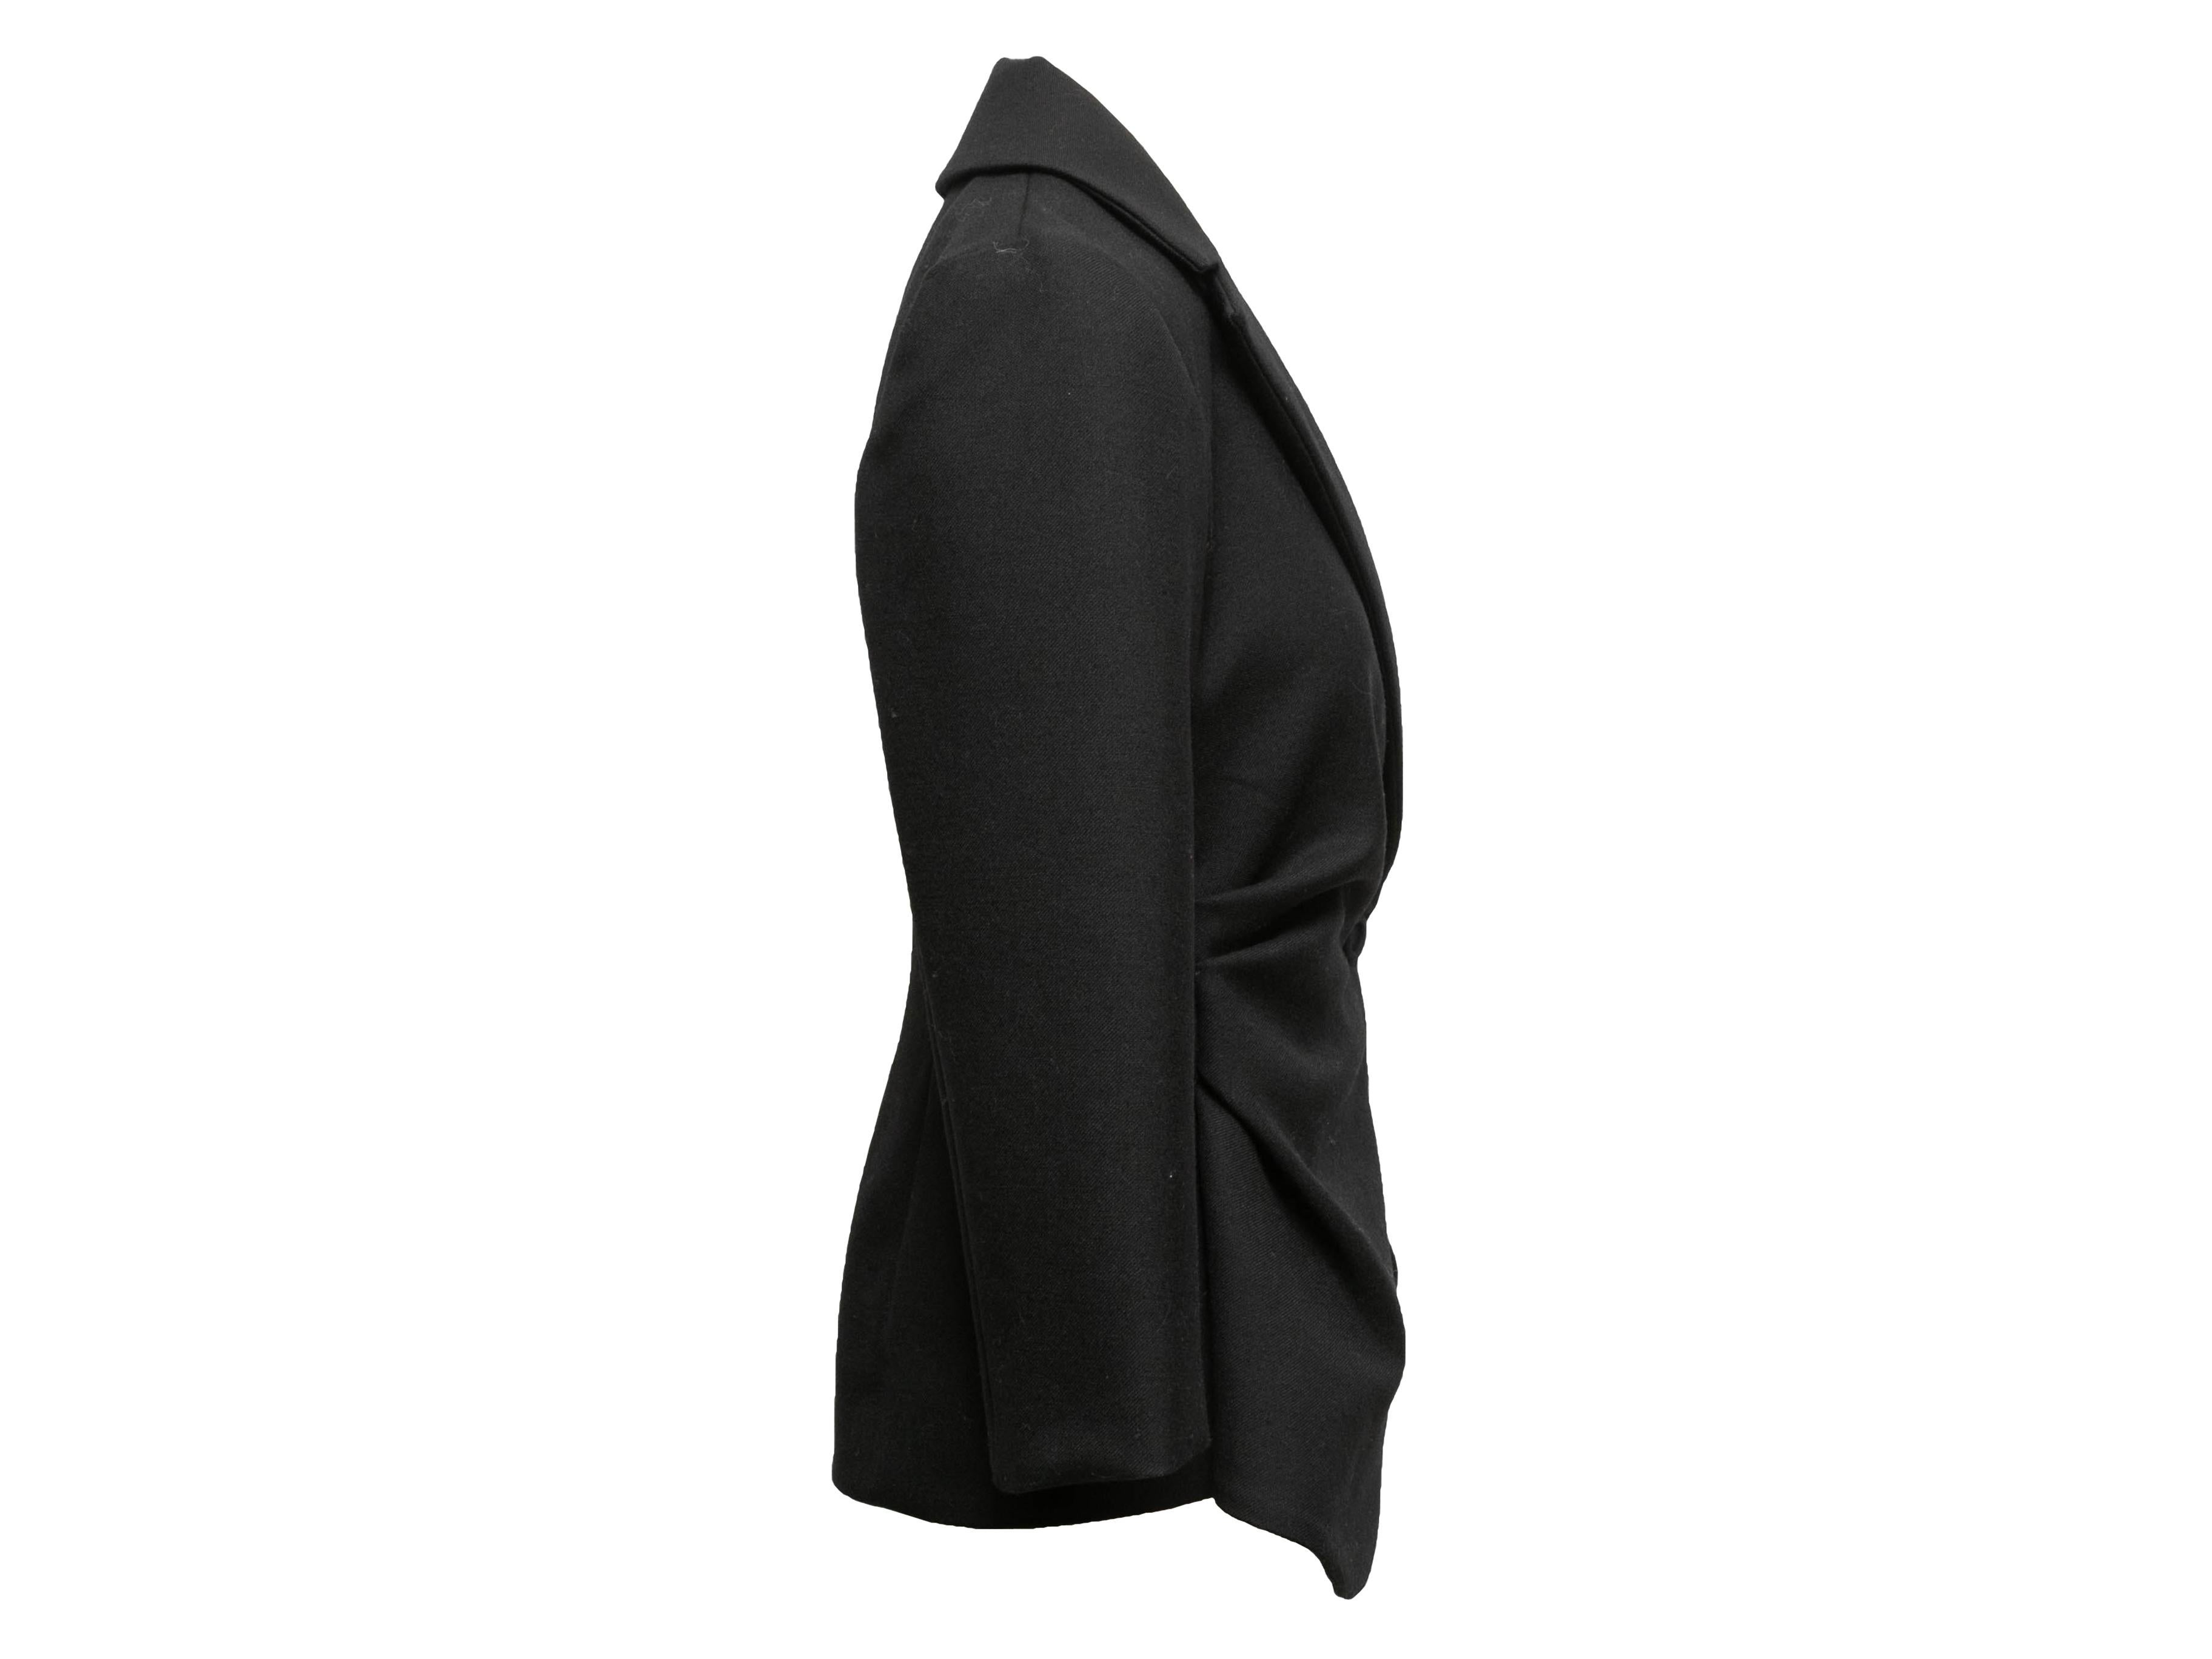 Black wool Le Souk asymmetrical blazer by Jacquemus. Notched lapel. Single front button closure. 35